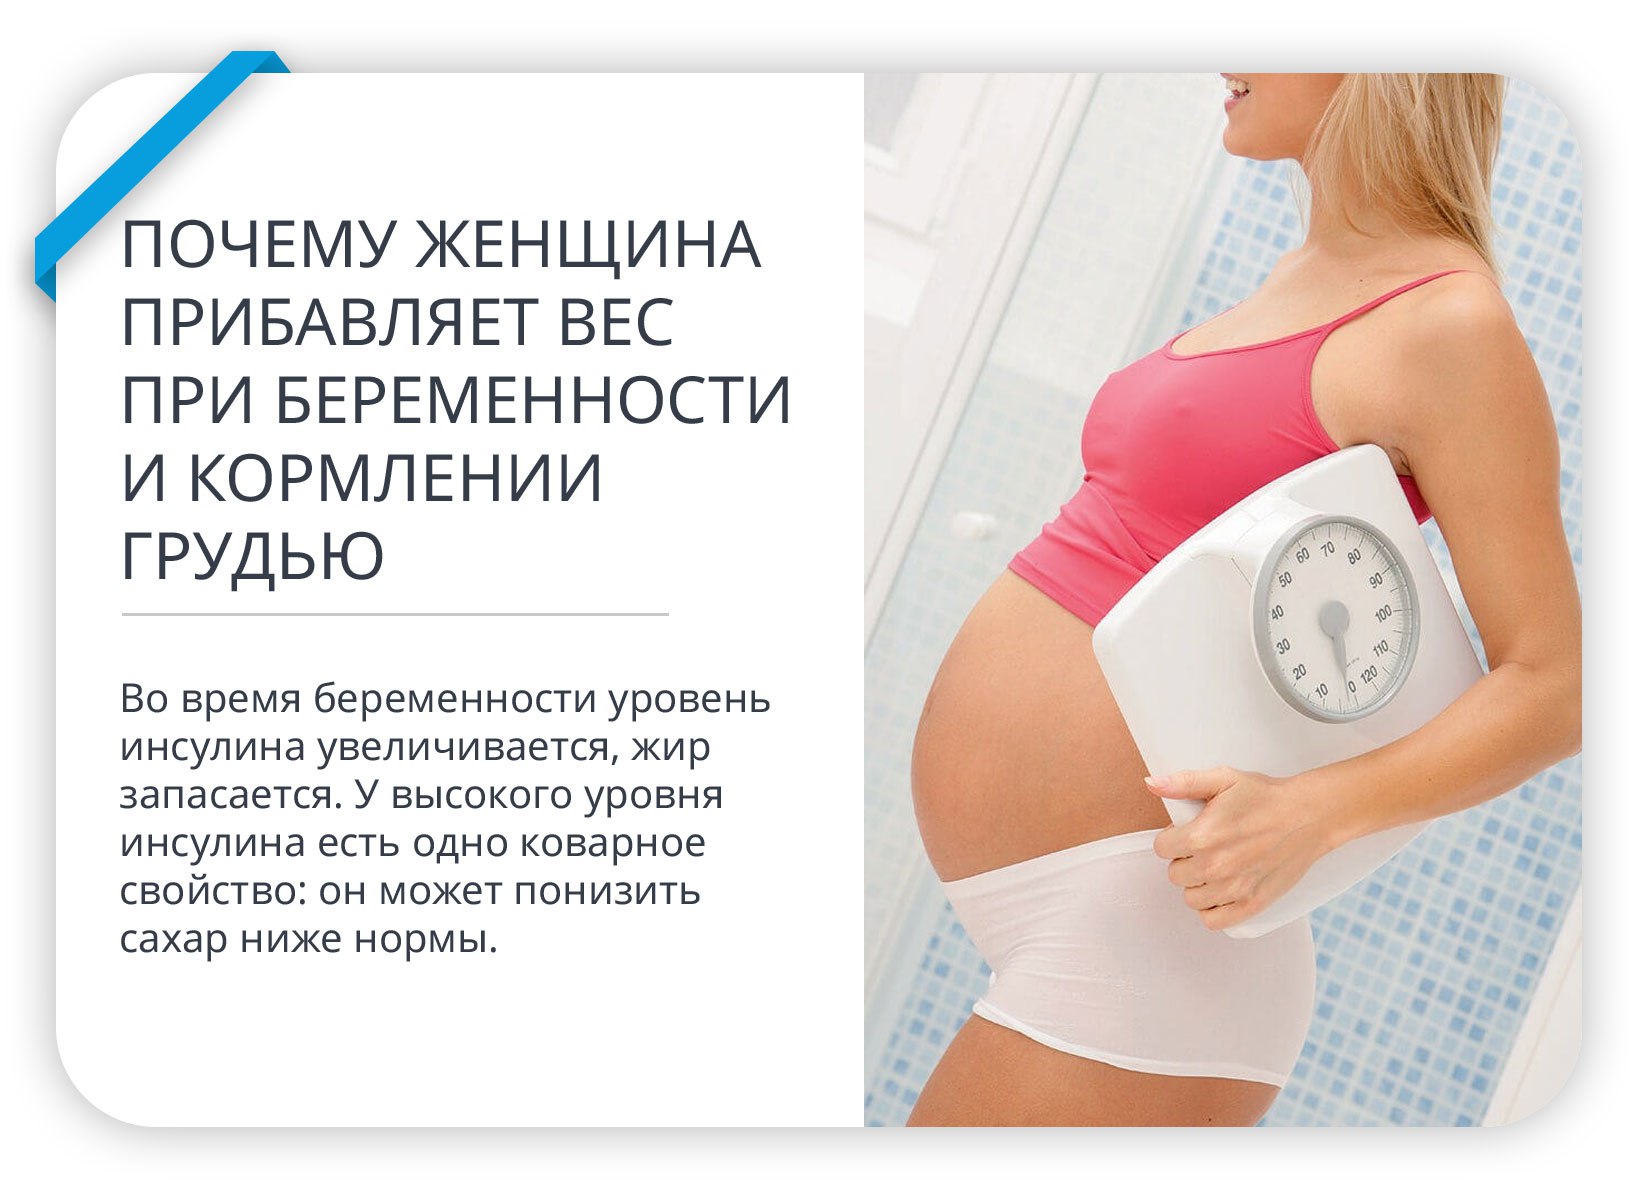 сравнение груди при беременности и не беременности фото 15